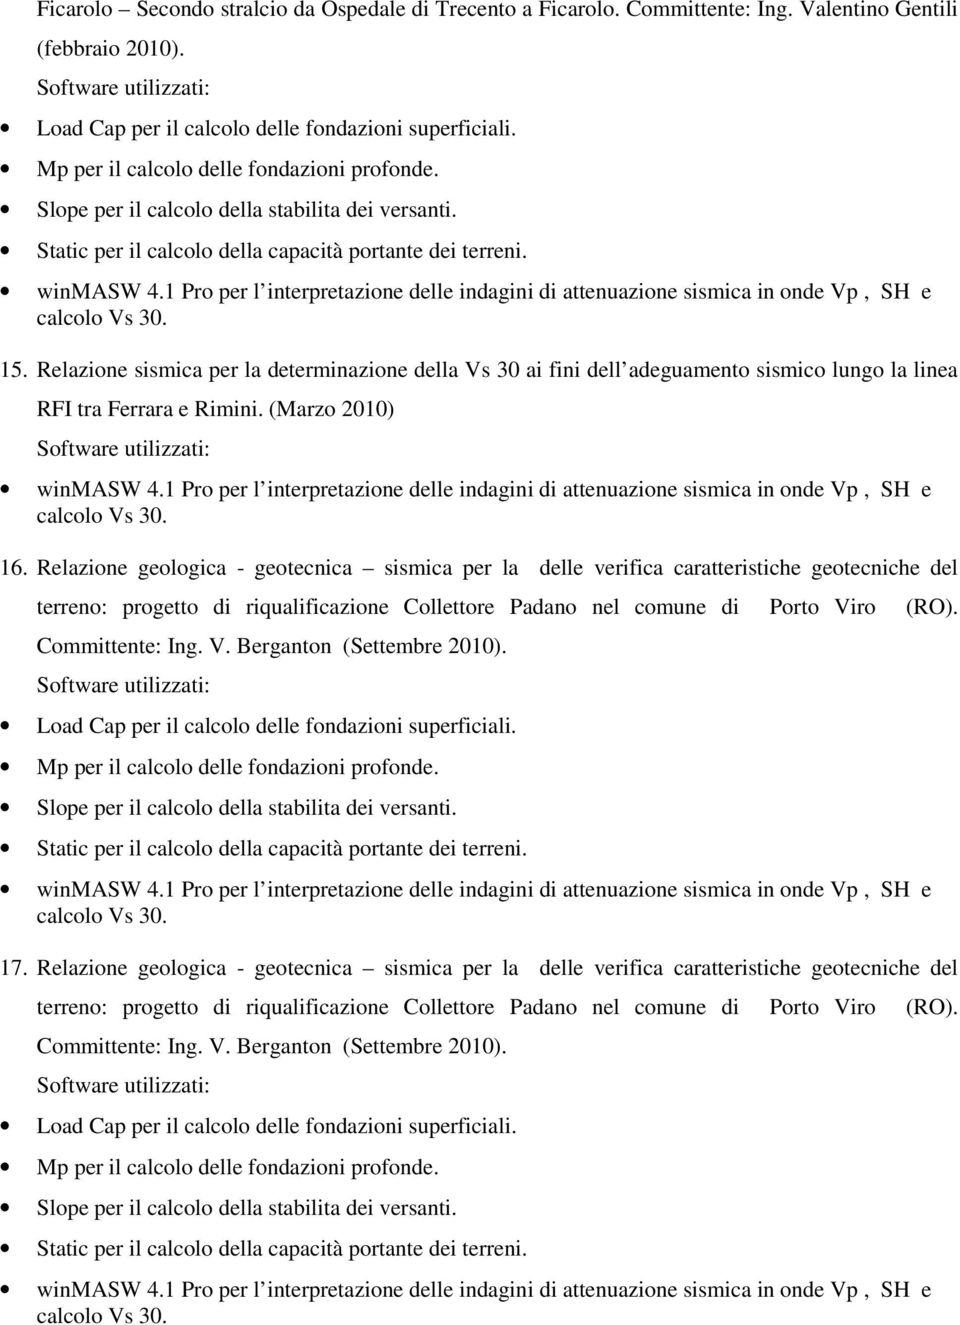 Relazione geologica - geotecnica sismica per la delle verifica caratteristiche geotecniche del terreno: progetto di riqualificazione Collettore Padano nel comune di Porto Viro (RO).